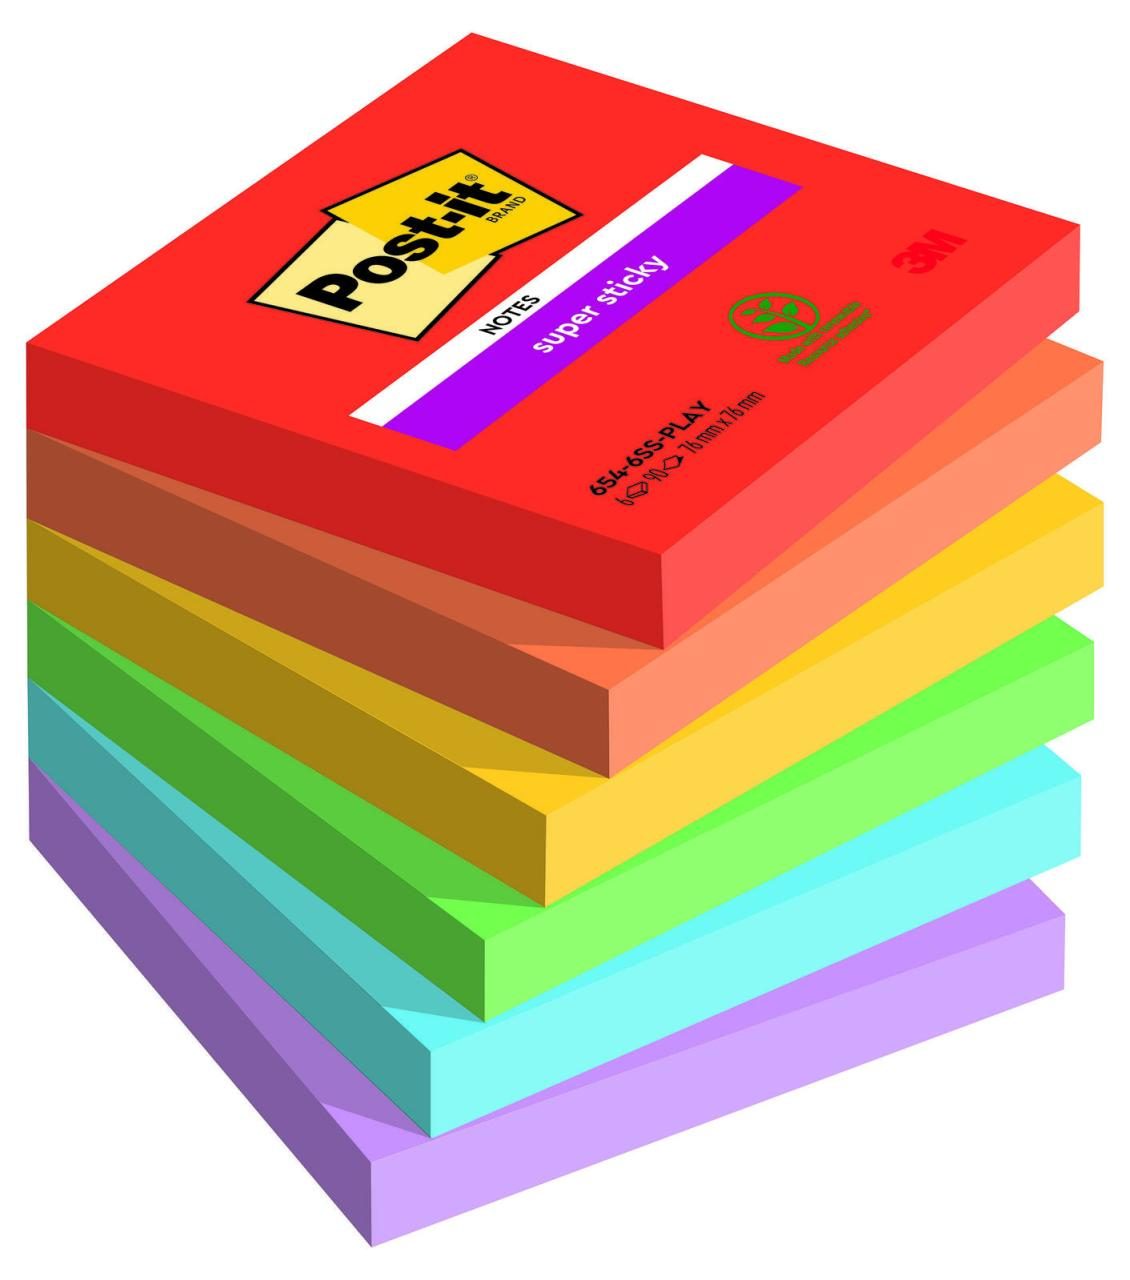 Post-it® Haftnotizen Playful farbsortiert von Post-it®